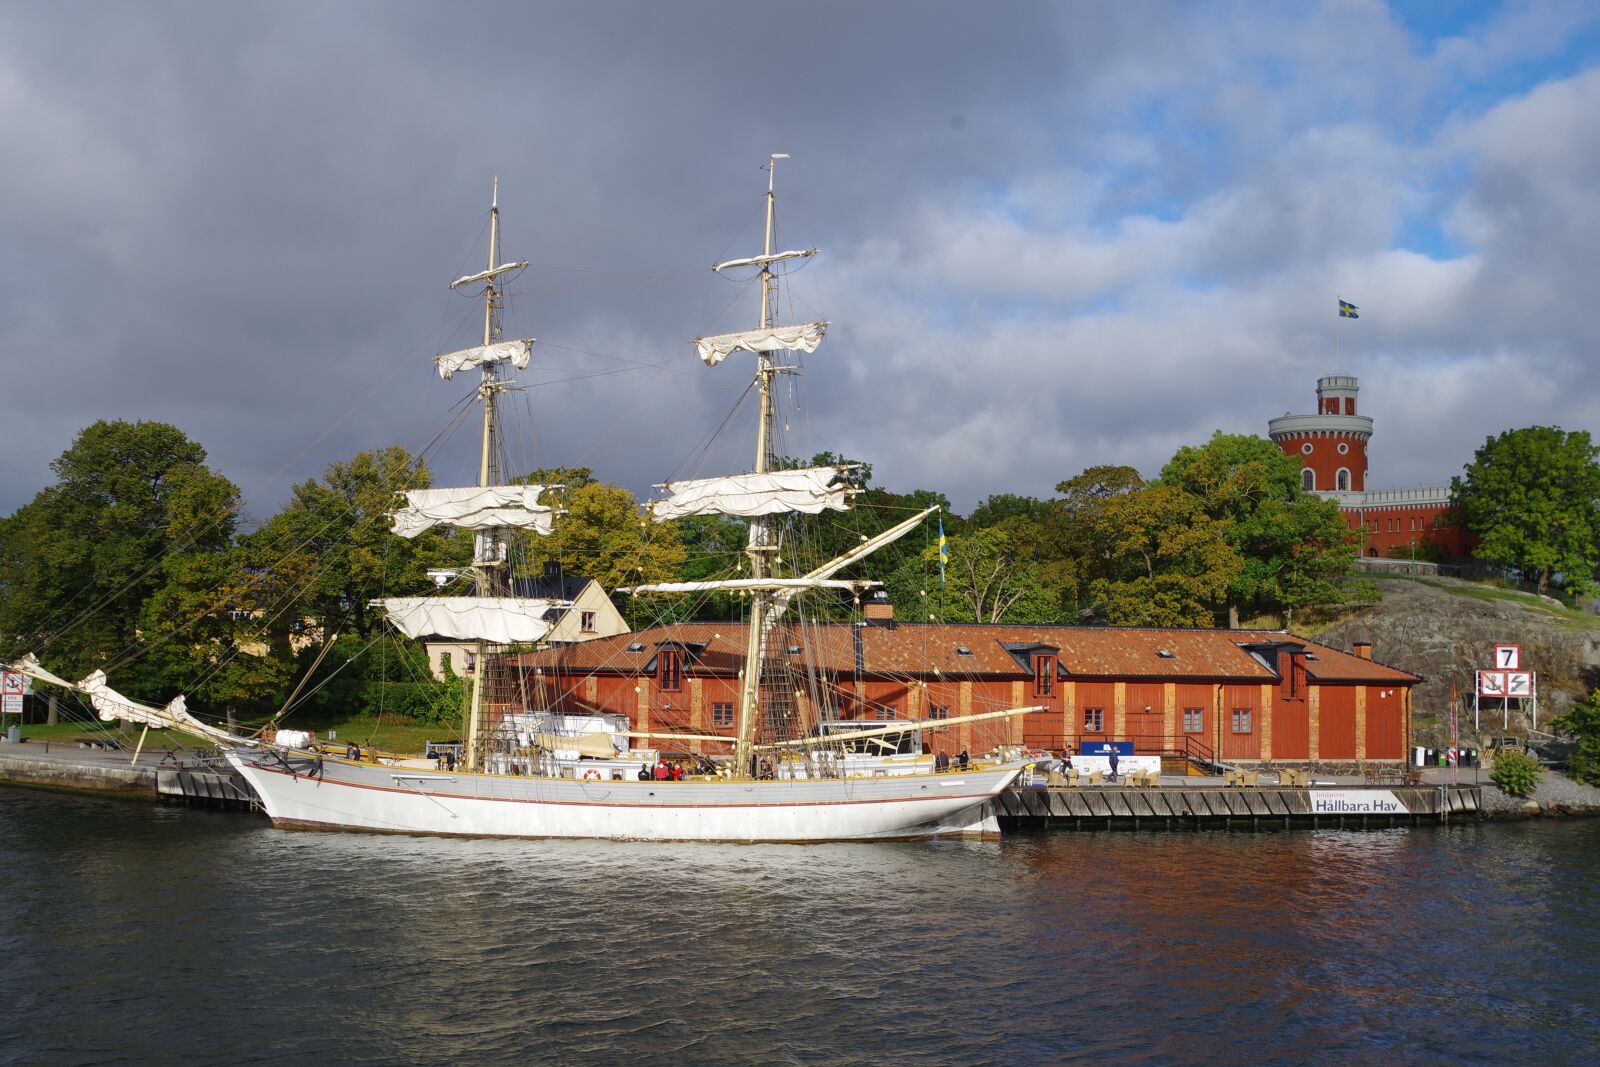 Pentax K-S1 sample photo. Stockholm, sailing vessel, sweden photography